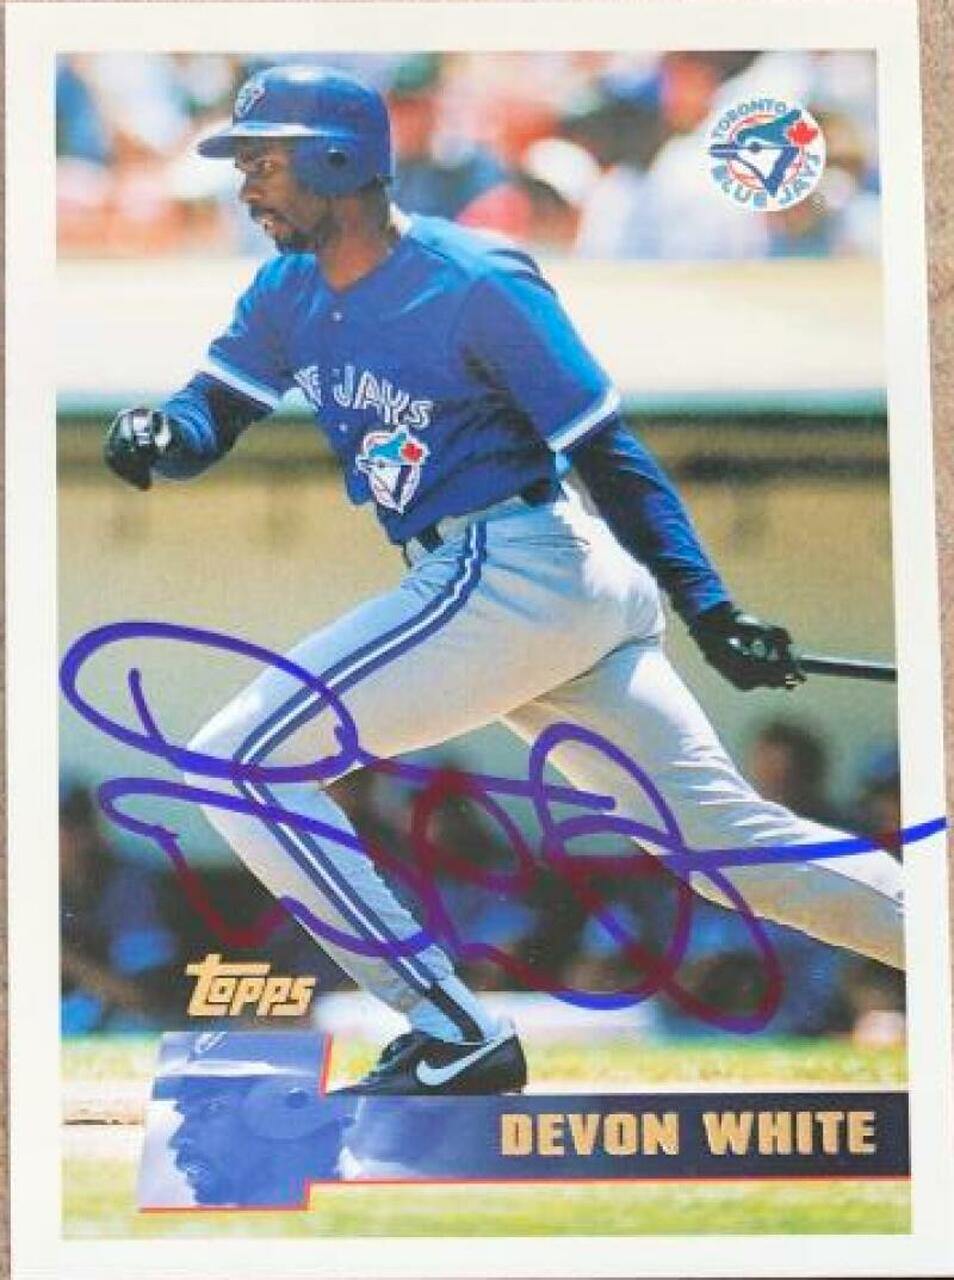 Devon White Signed 1996 Topps Baseball Card - Toronto Blue Jays - PastPros